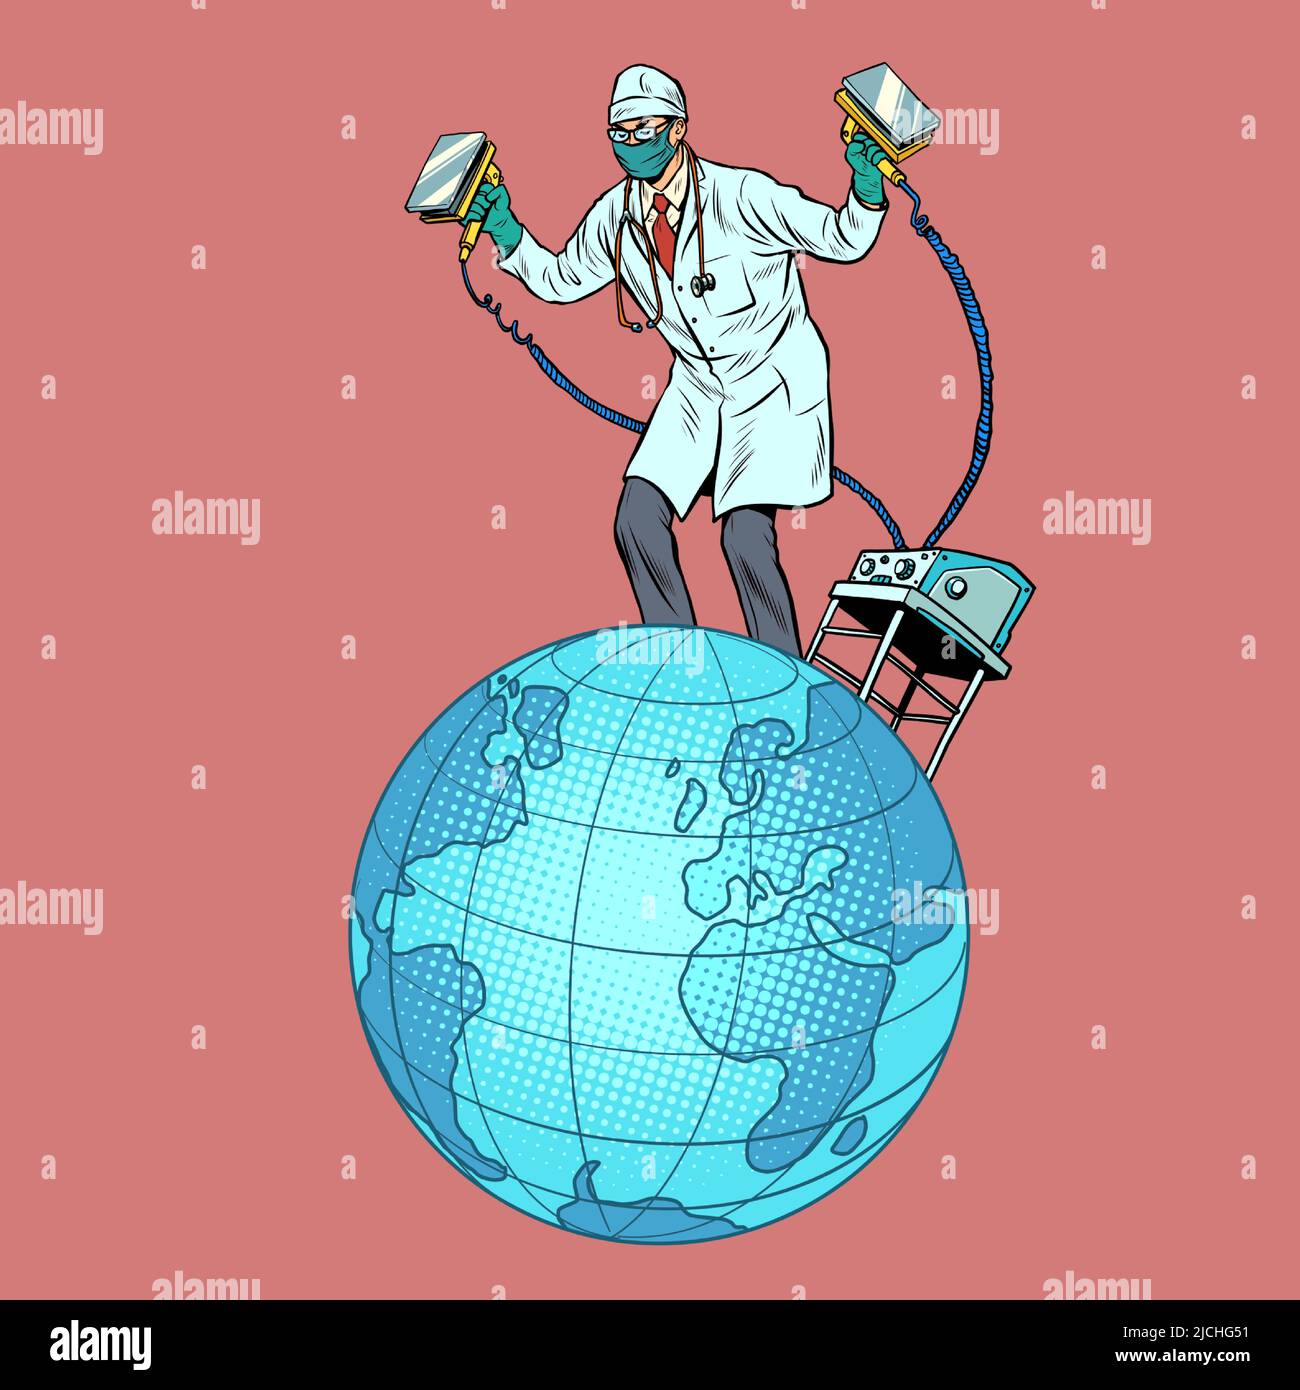 Der Arzt rezitiert den Planeten Erde mit einem elektrischen Defibrillator-Schock. Ökologie und Politik, Gesundheit. Pandemie und Epidemie Stock Vektor